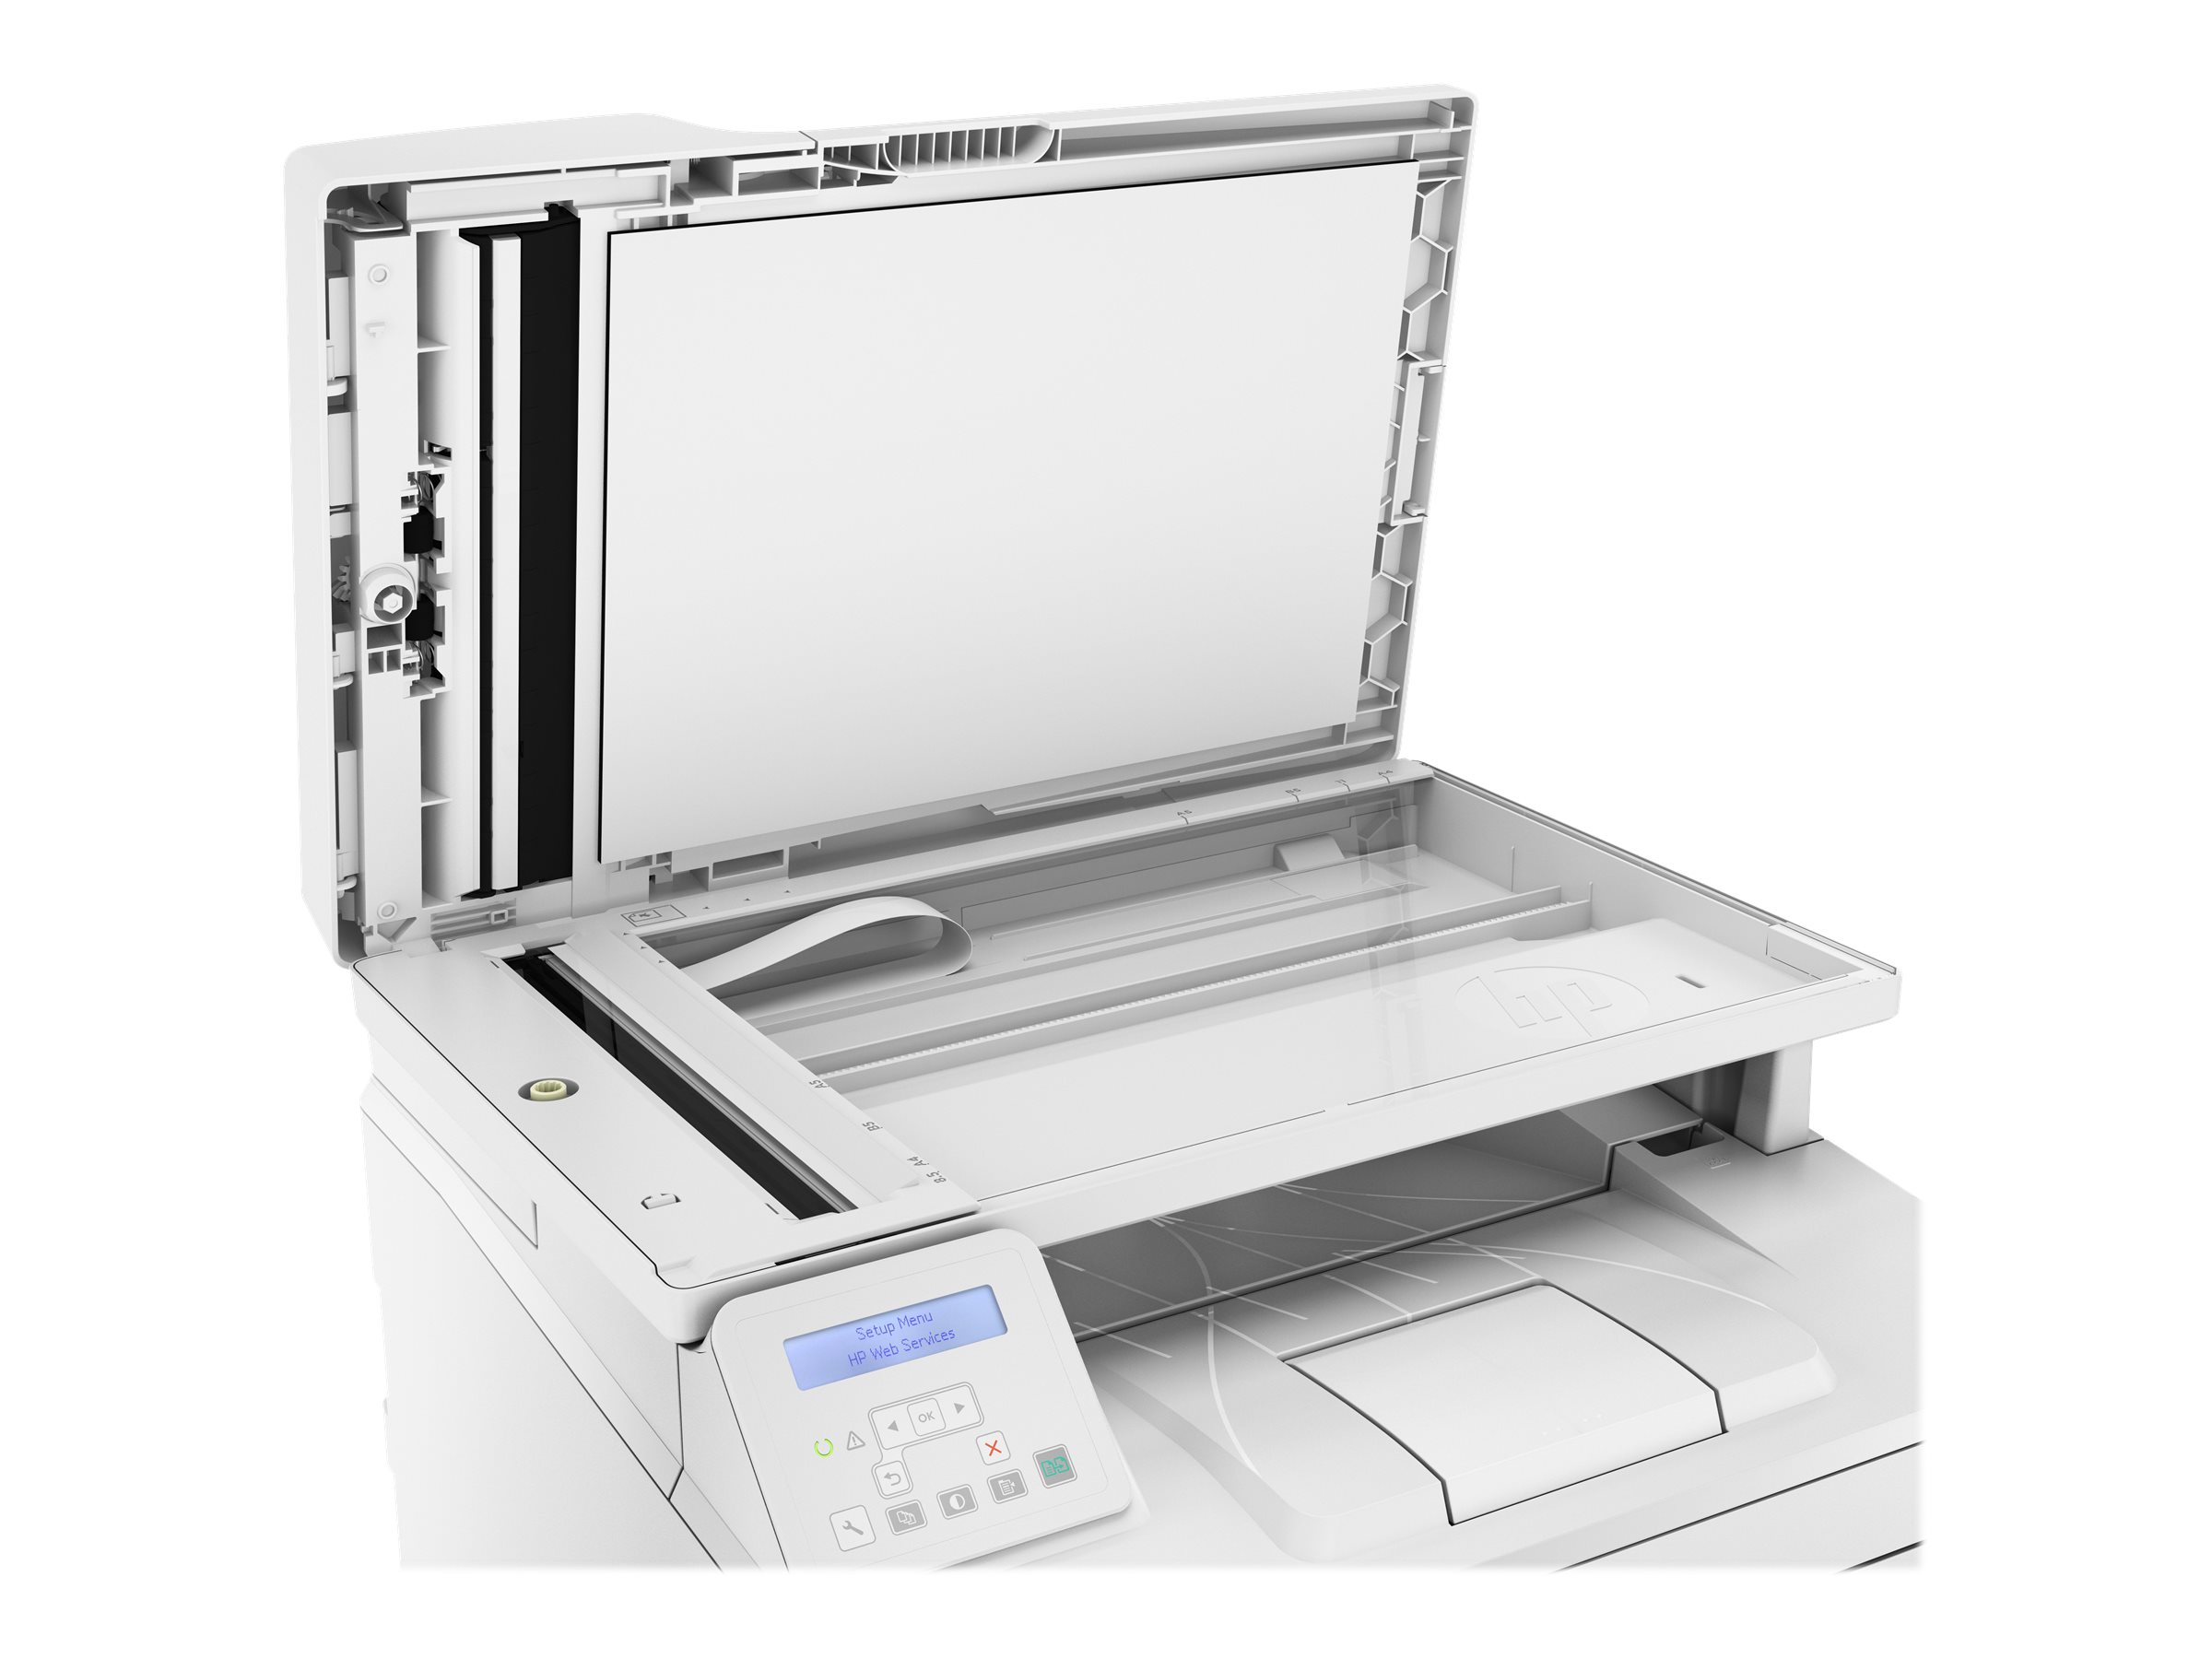 HP LaserJet Pro MFP M227sdn - Multifunktionsdrucker - s/w - Laser - Legal (216 x 356 mm)